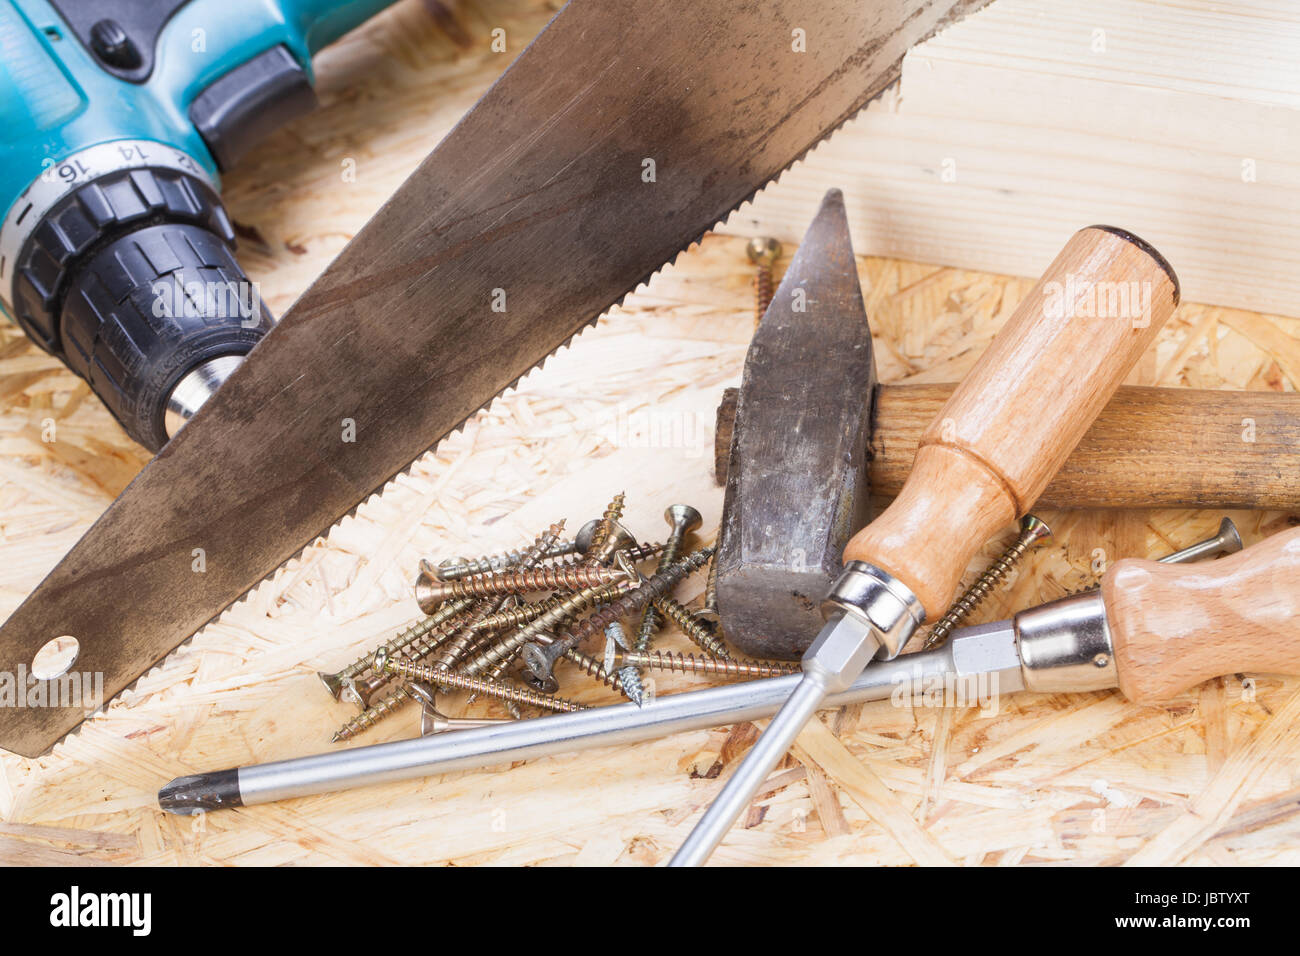 Heimwerker Werkzeug mit Akkuschrauber, Schraubendreher, Säge und Schrauben in einer Werkstatt Stock Photo